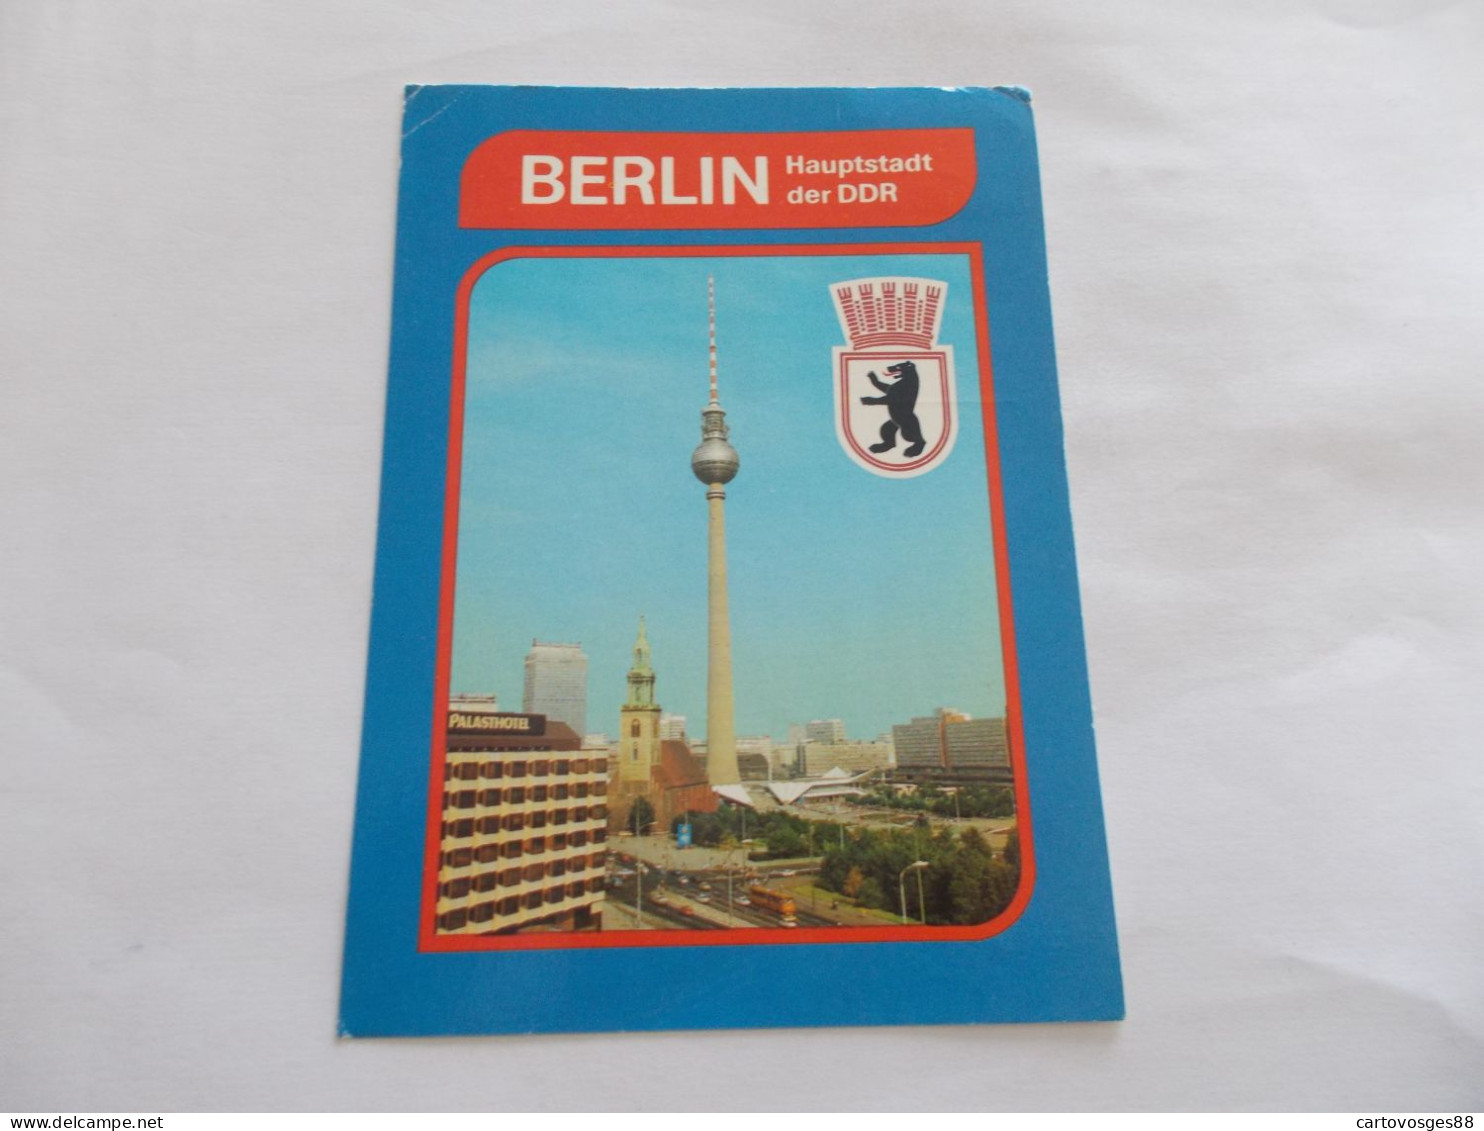 BERLIN   ( ALLEMAGNE GERMANY ) HAUPTSTADT DER DDR  STADTZENTRUM PALASHOTEL AU 1er PLAN - Brandenburger Tor